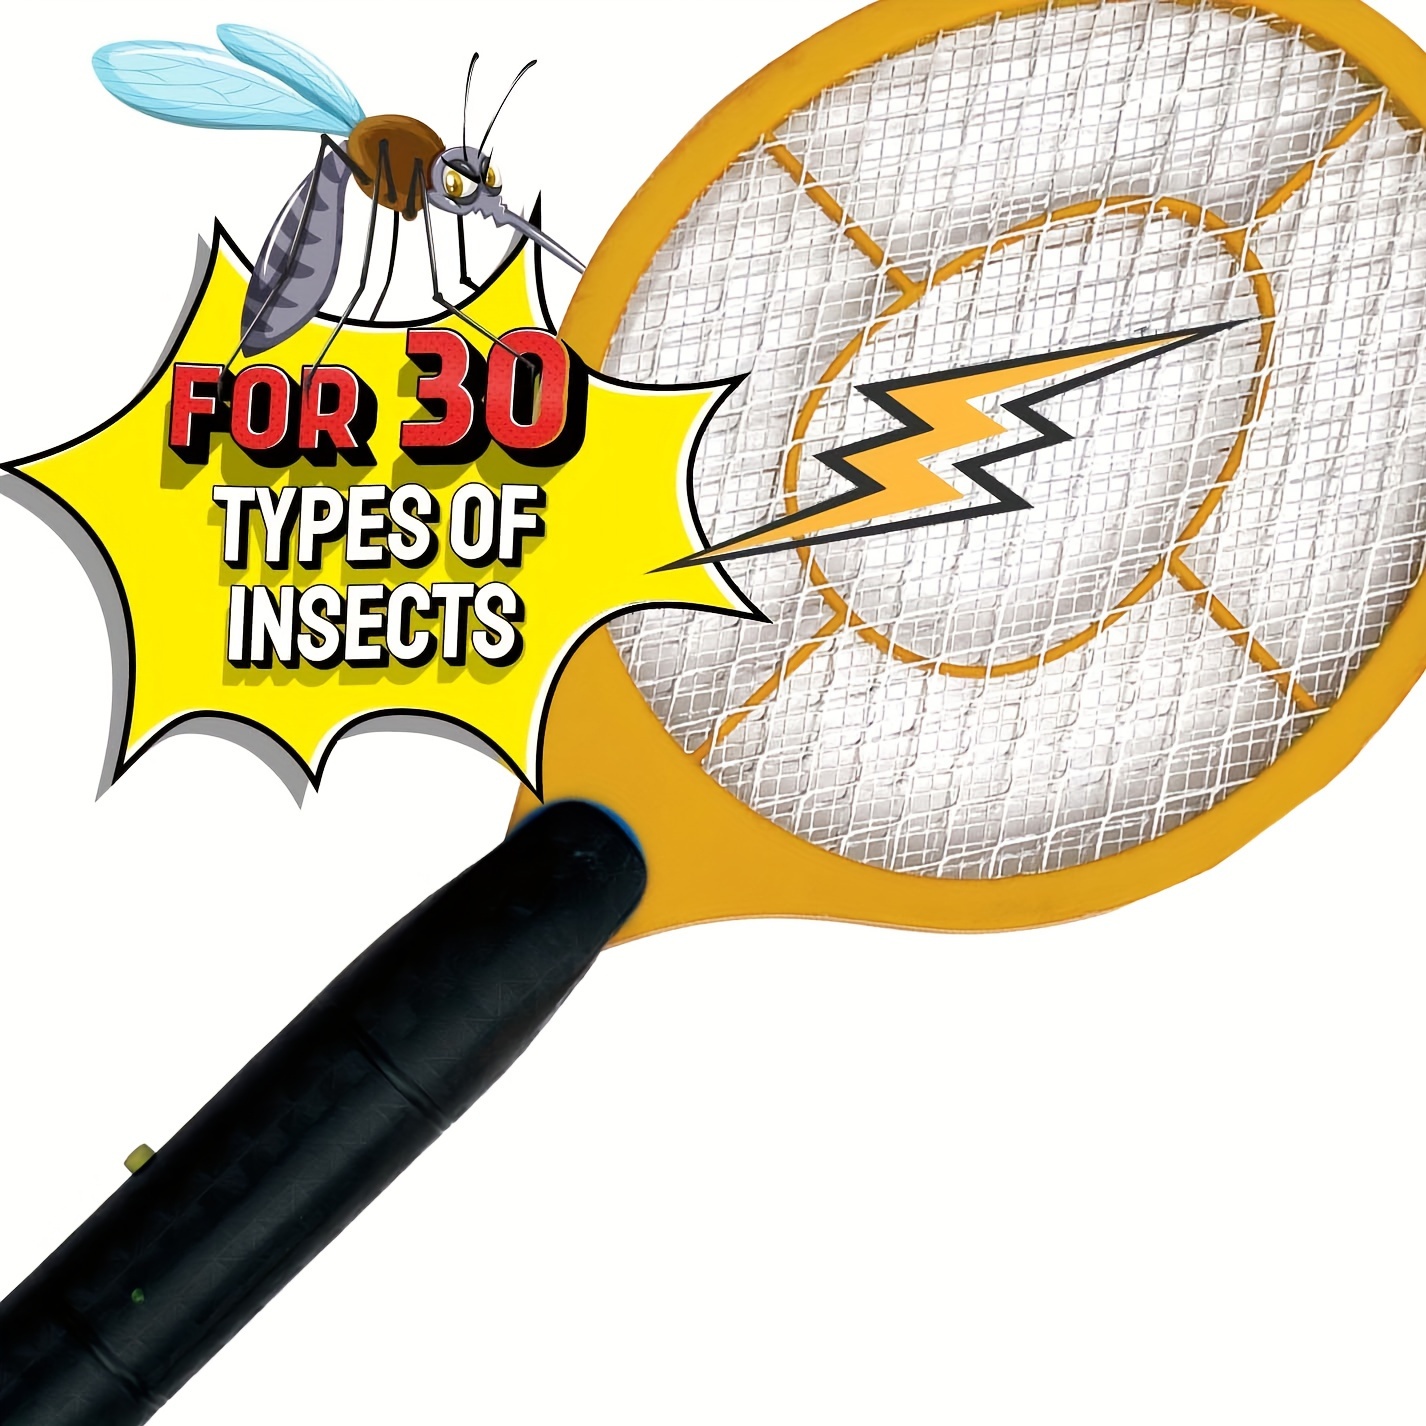 Piège à mouches électrique, tueur d'insectes, lutte contre les